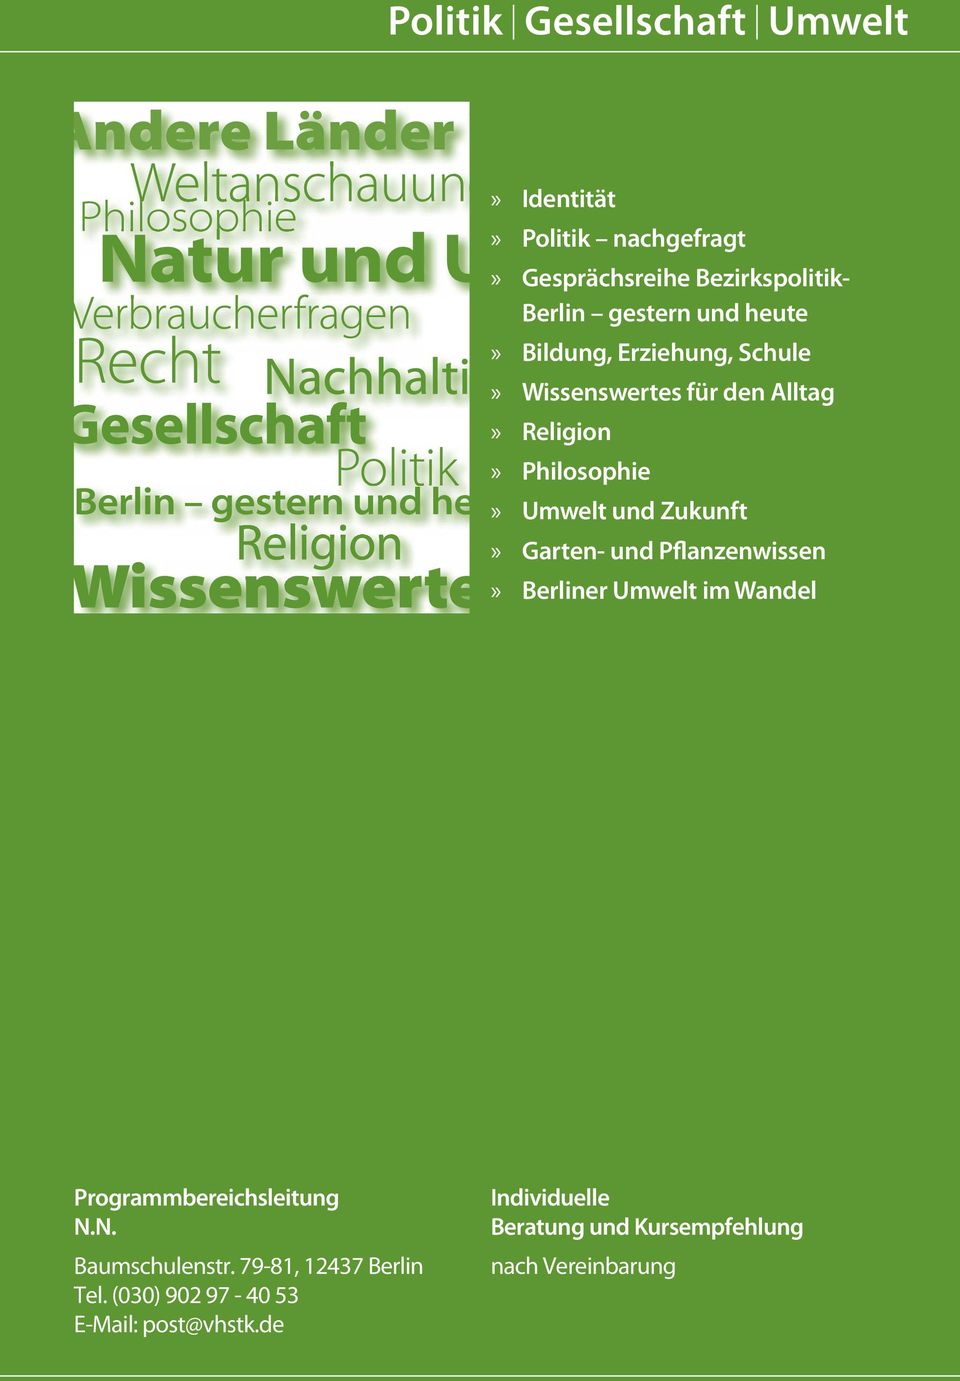 Pflanzenwissen» Berliner Umwelt im Wandel Programmbereichsleitung N.N. Baumschulenstr. 79-81, 12437 Berlin Tel.